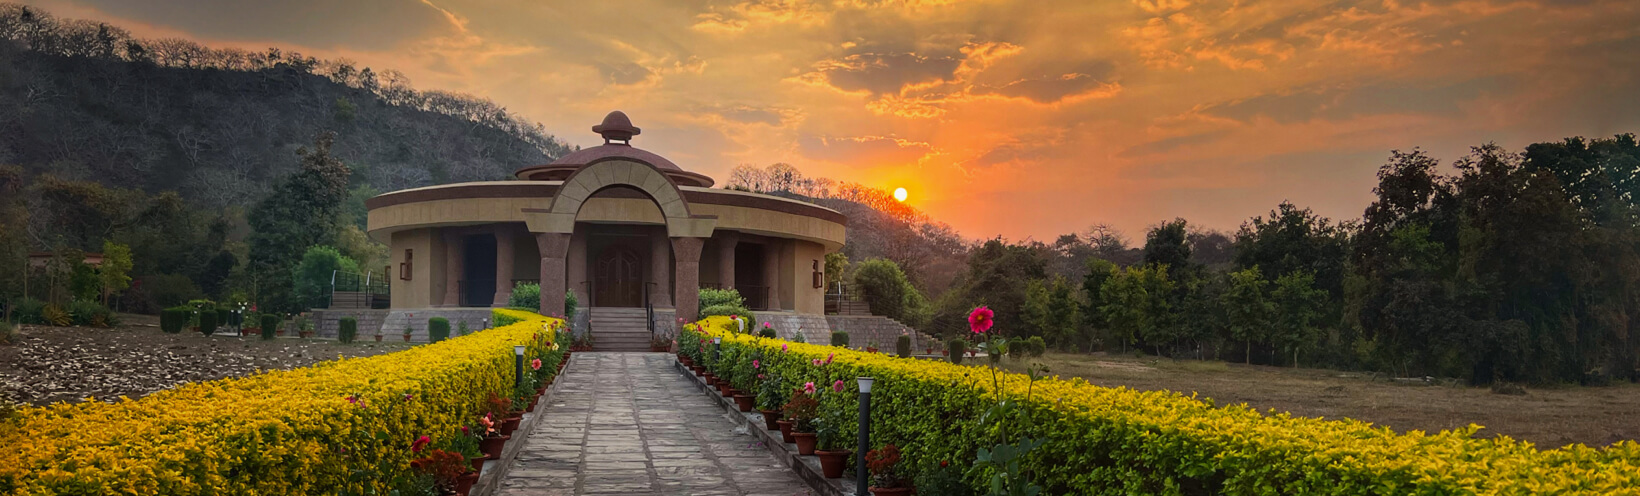 khajuraho shrine sunrise lush banner - Himalayan Institute